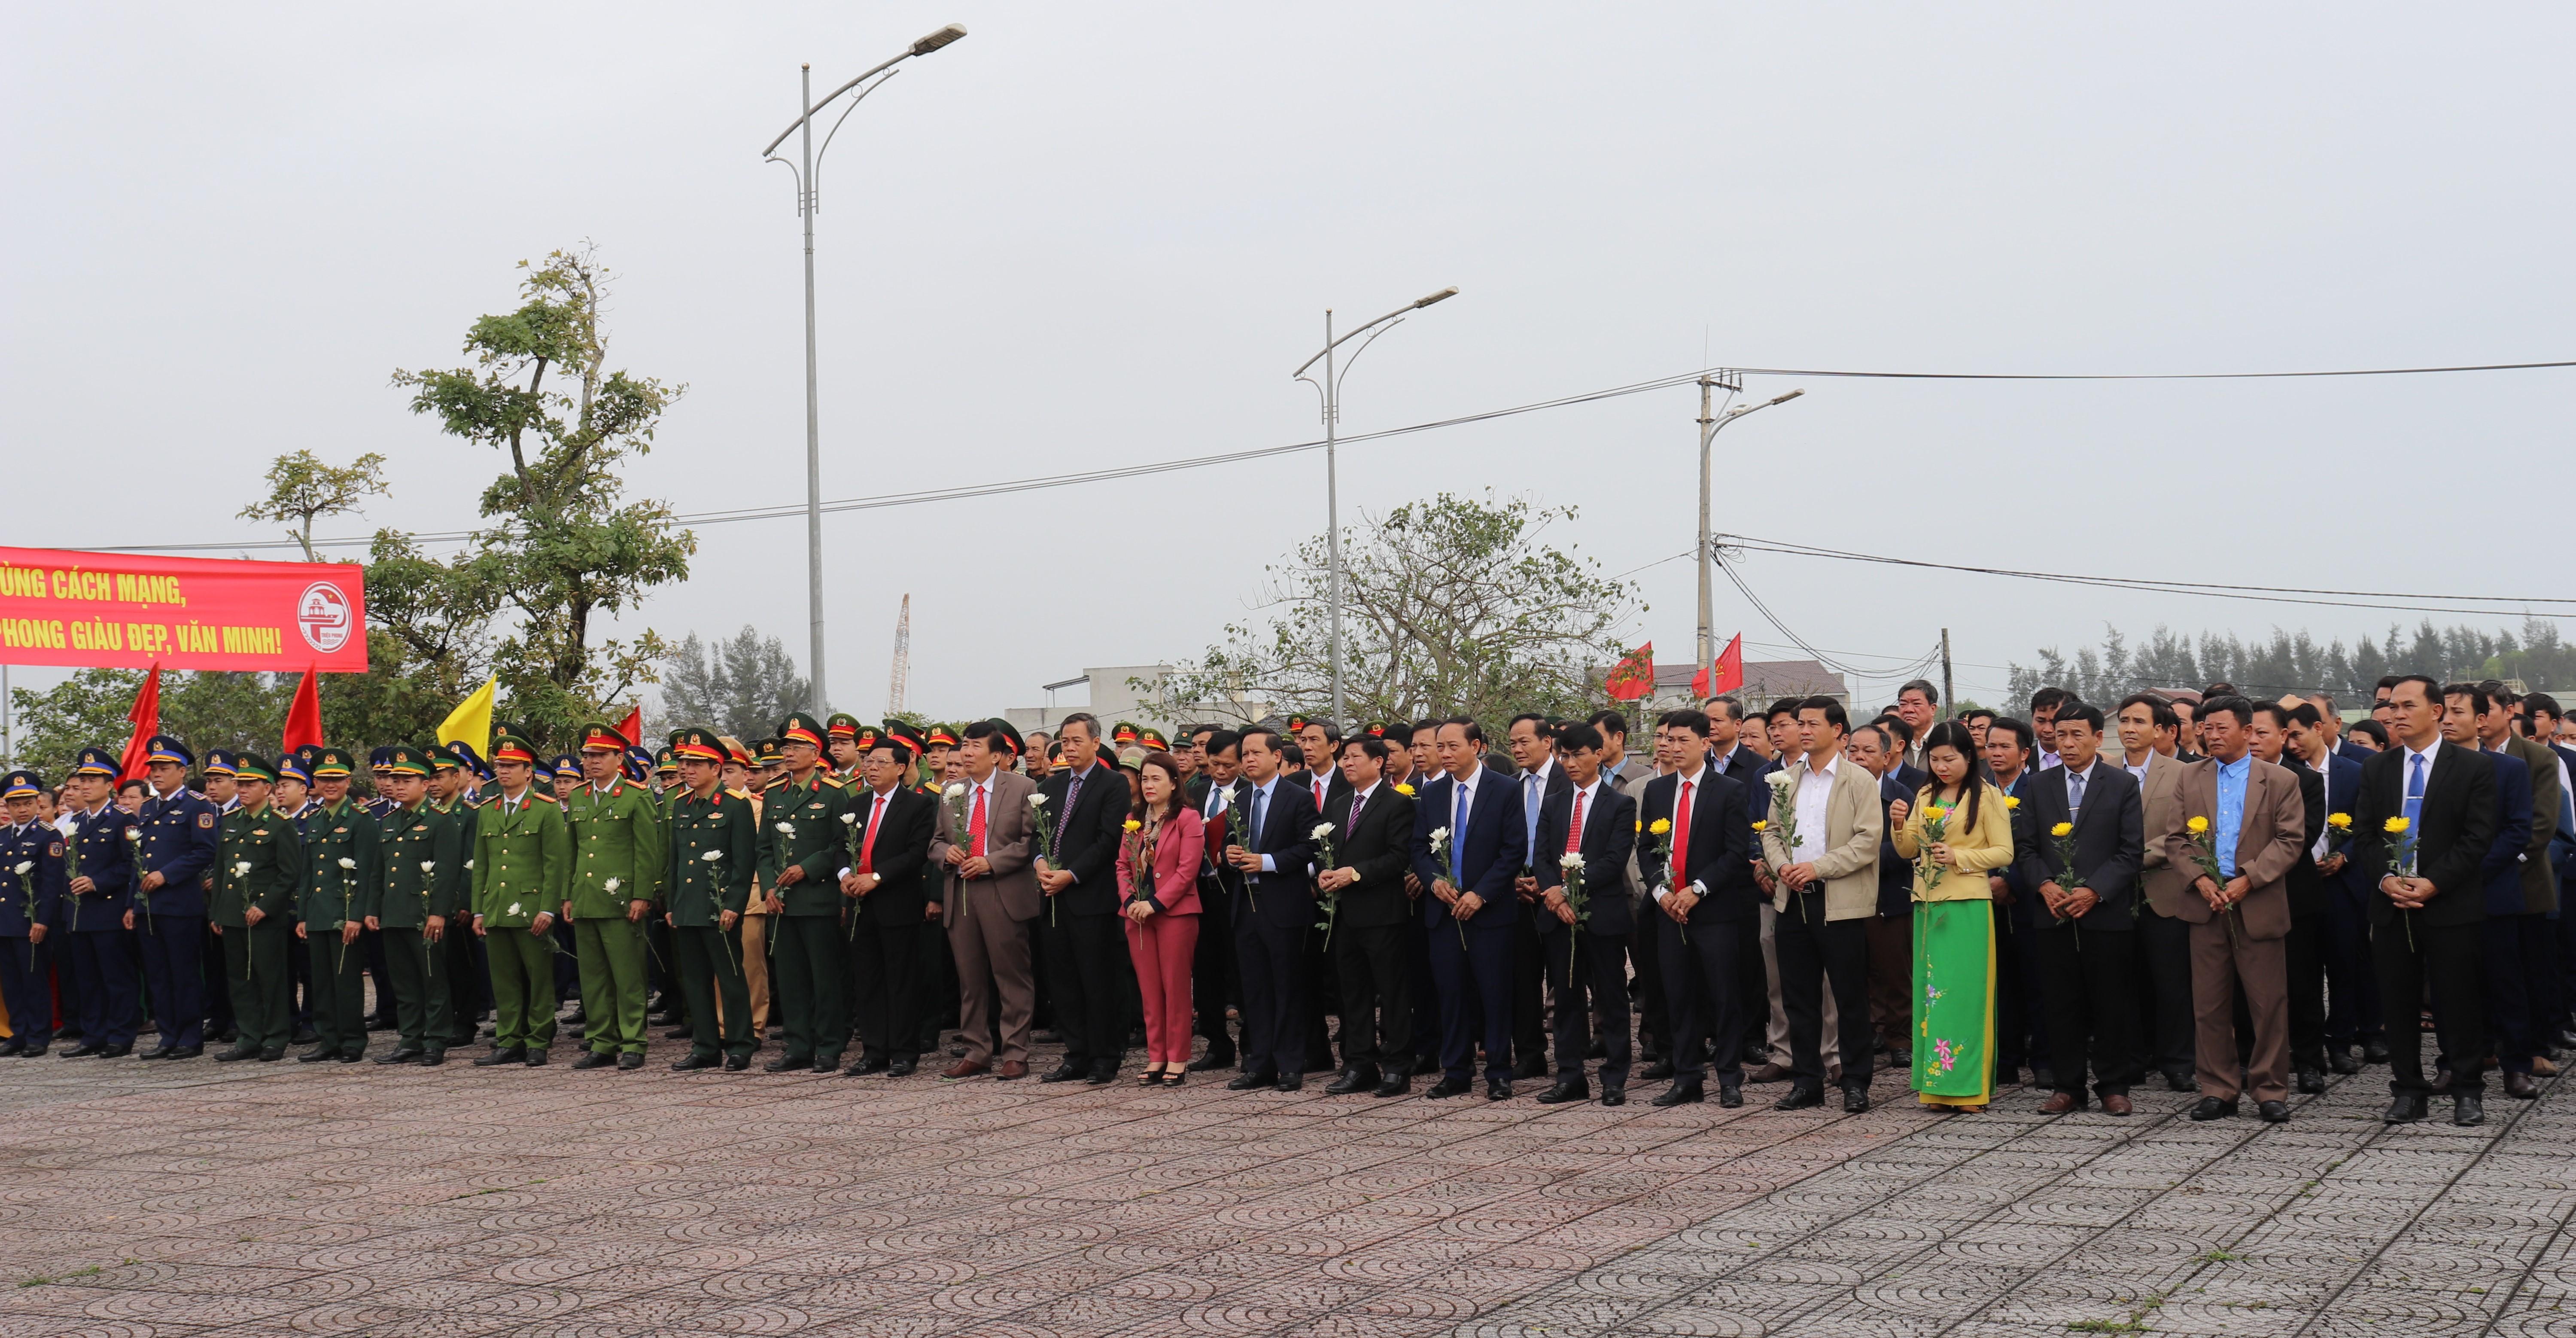 Triệu Phong kỷ niệm 50 năm chiến thắng Cửa Việt